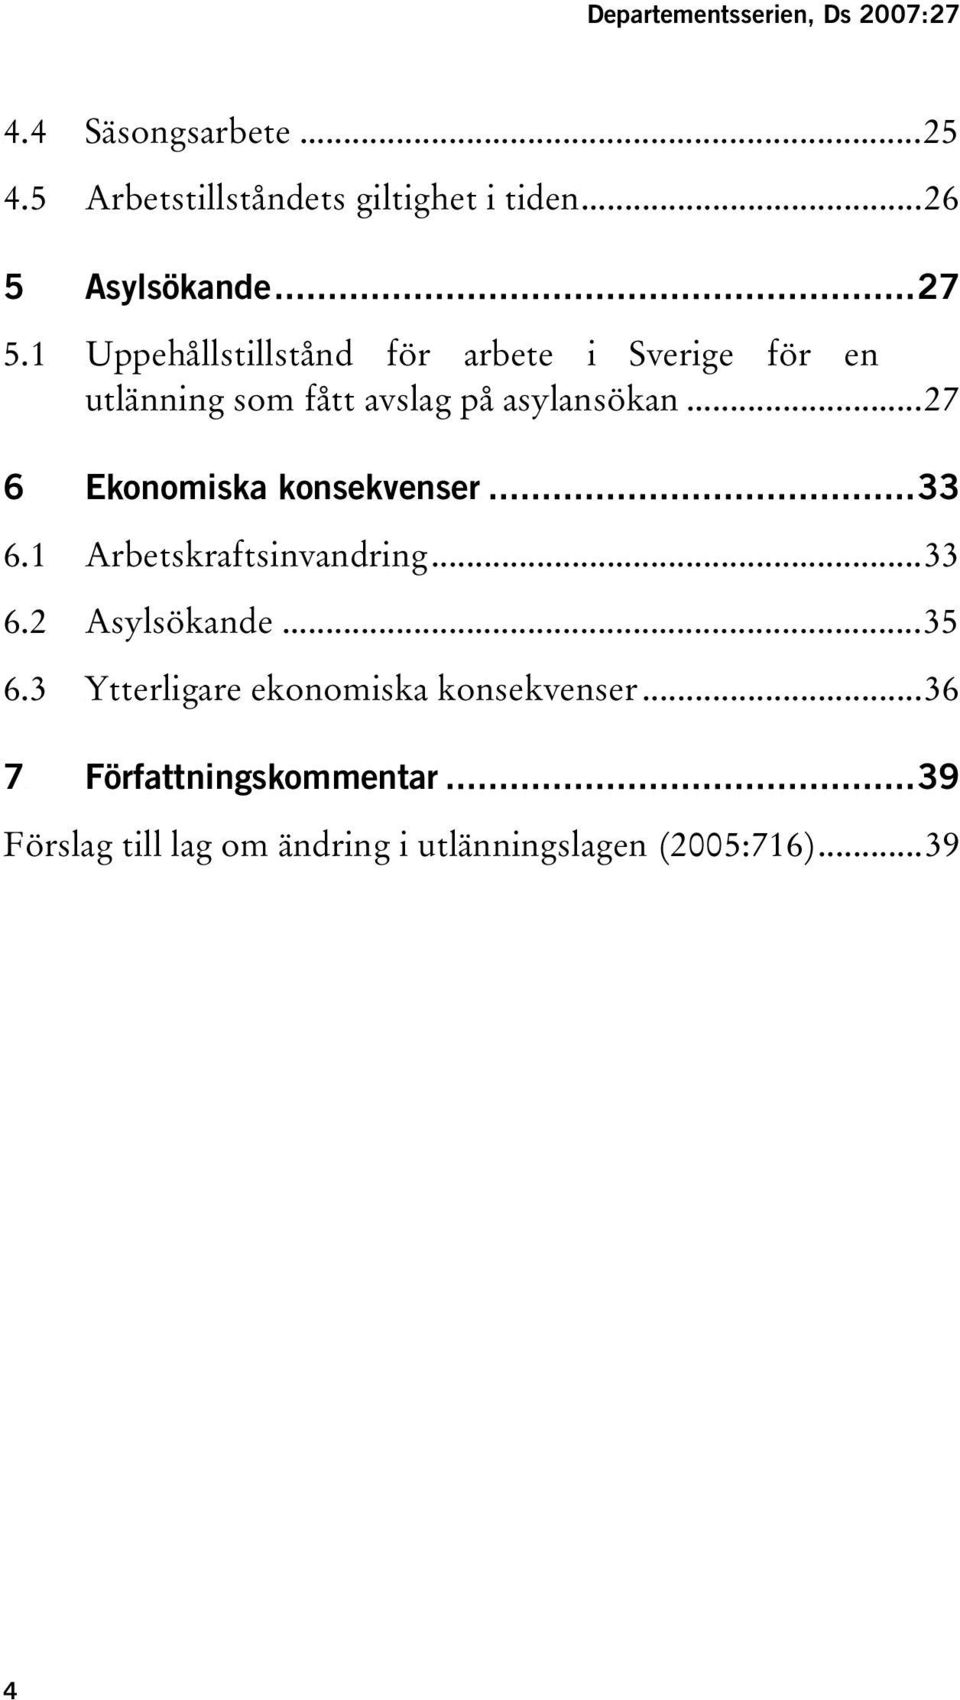 ..27 TUppehållstillstånd för arbete i Sverige för en utlänning som fått avslag på asylansökanut...27 konsekvenserut.